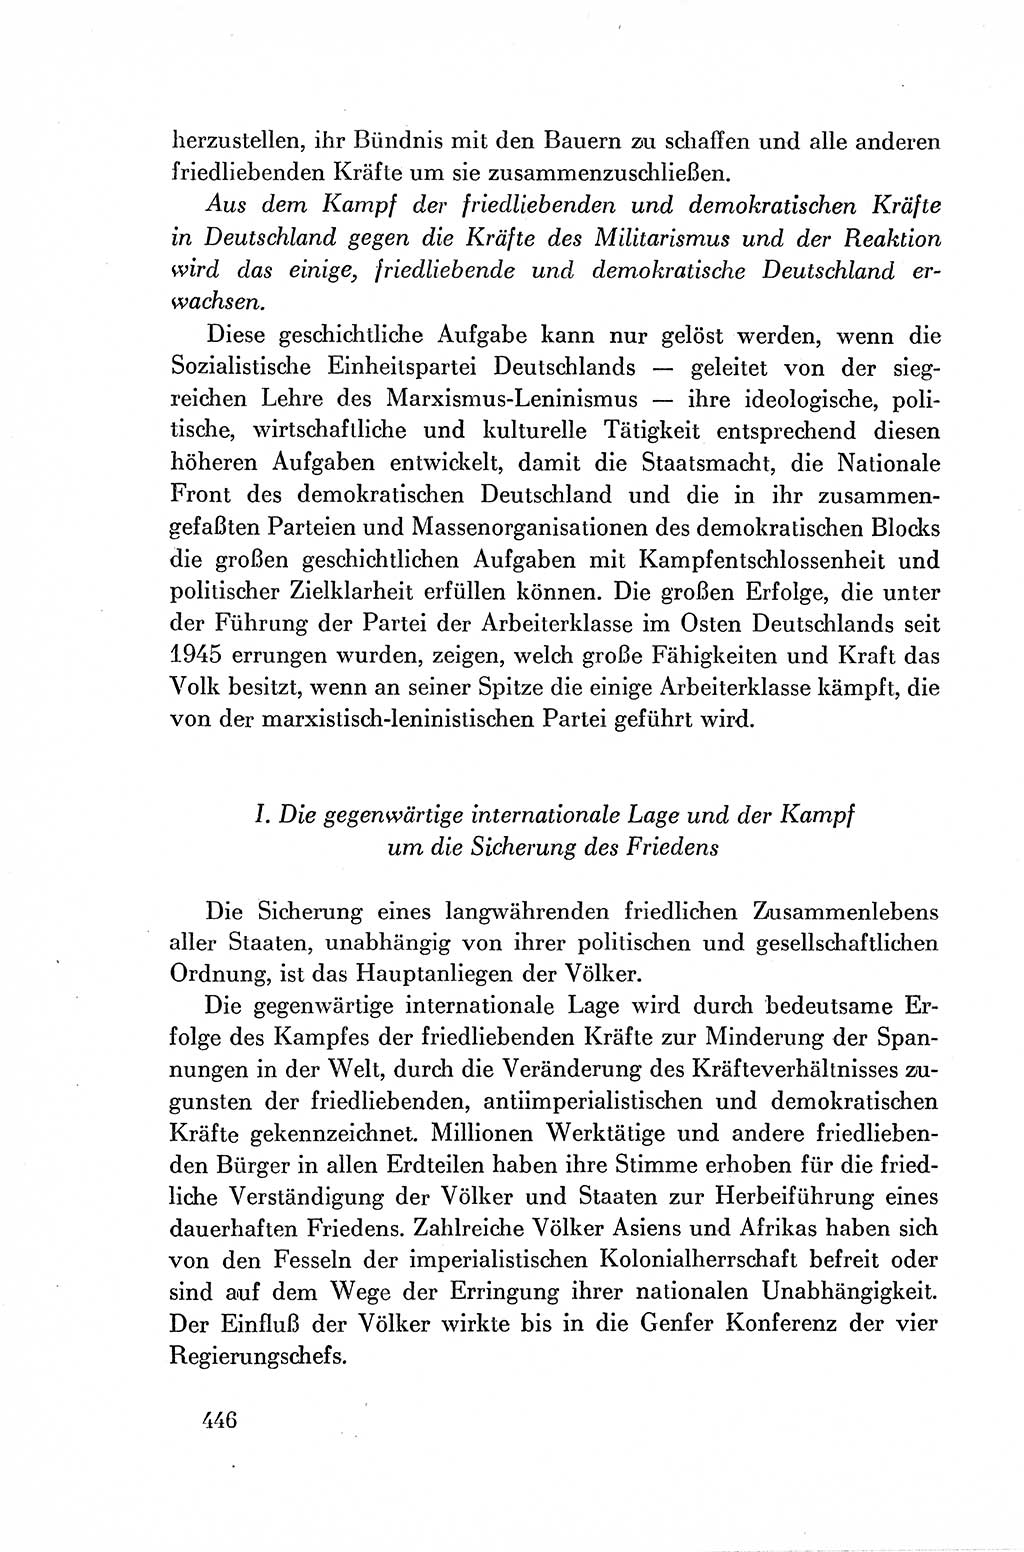 Dokumente der Sozialistischen Einheitspartei Deutschlands (SED) [Deutsche Demokratische Republik (DDR)] 1954-1955, Seite 446 (Dok. SED DDR 1954-1955, S. 446)